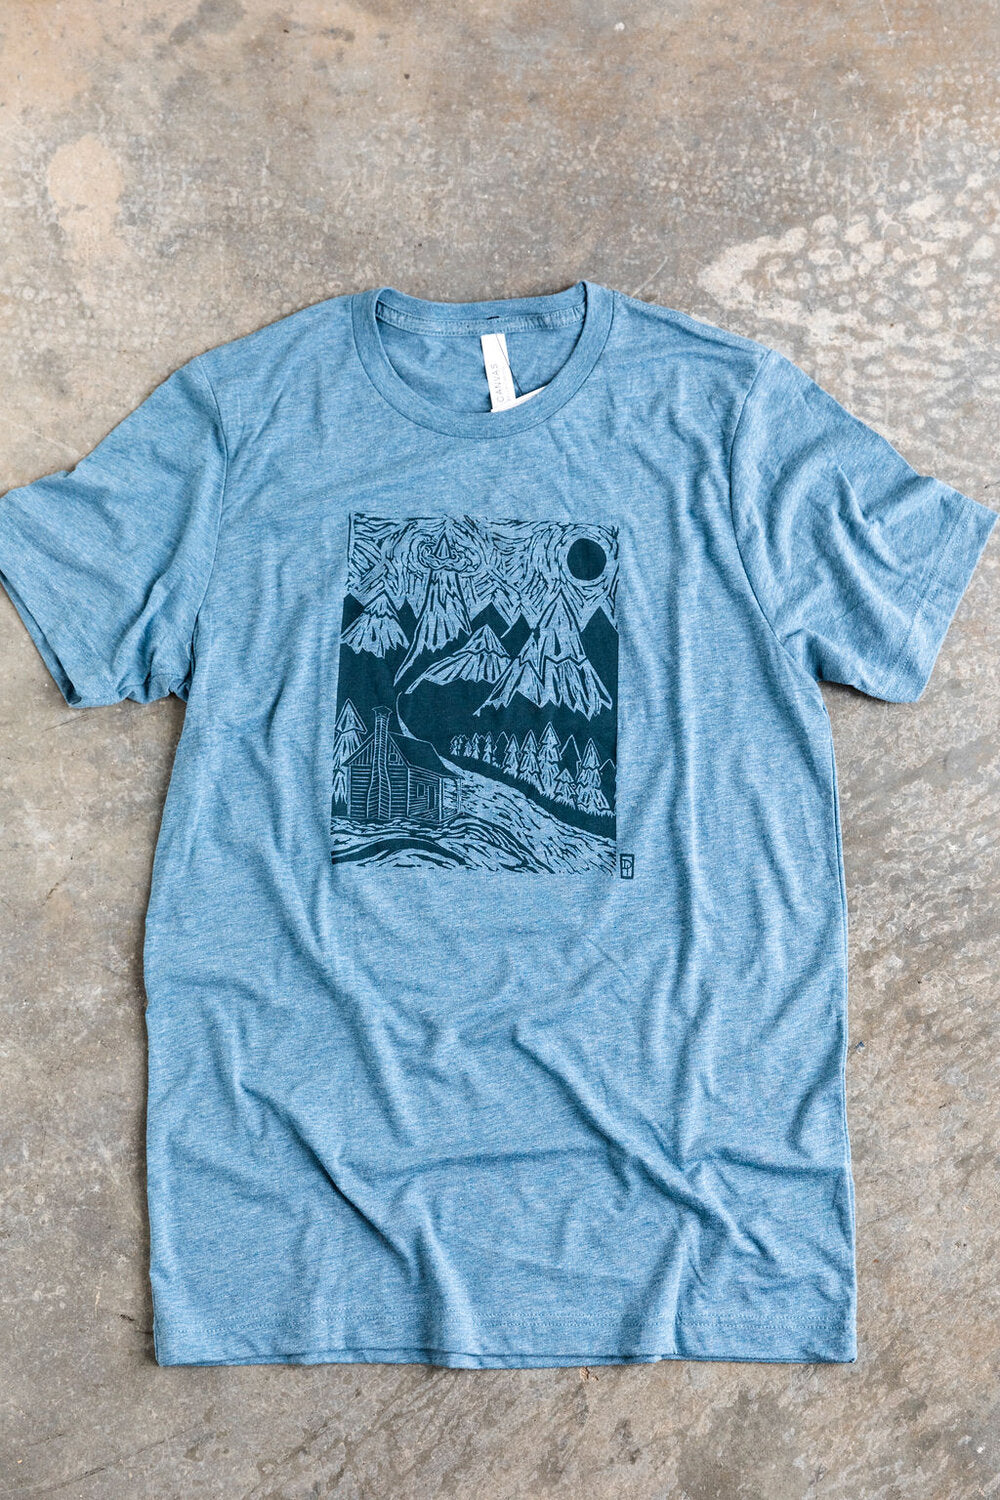 The Wilderness T-Shirt